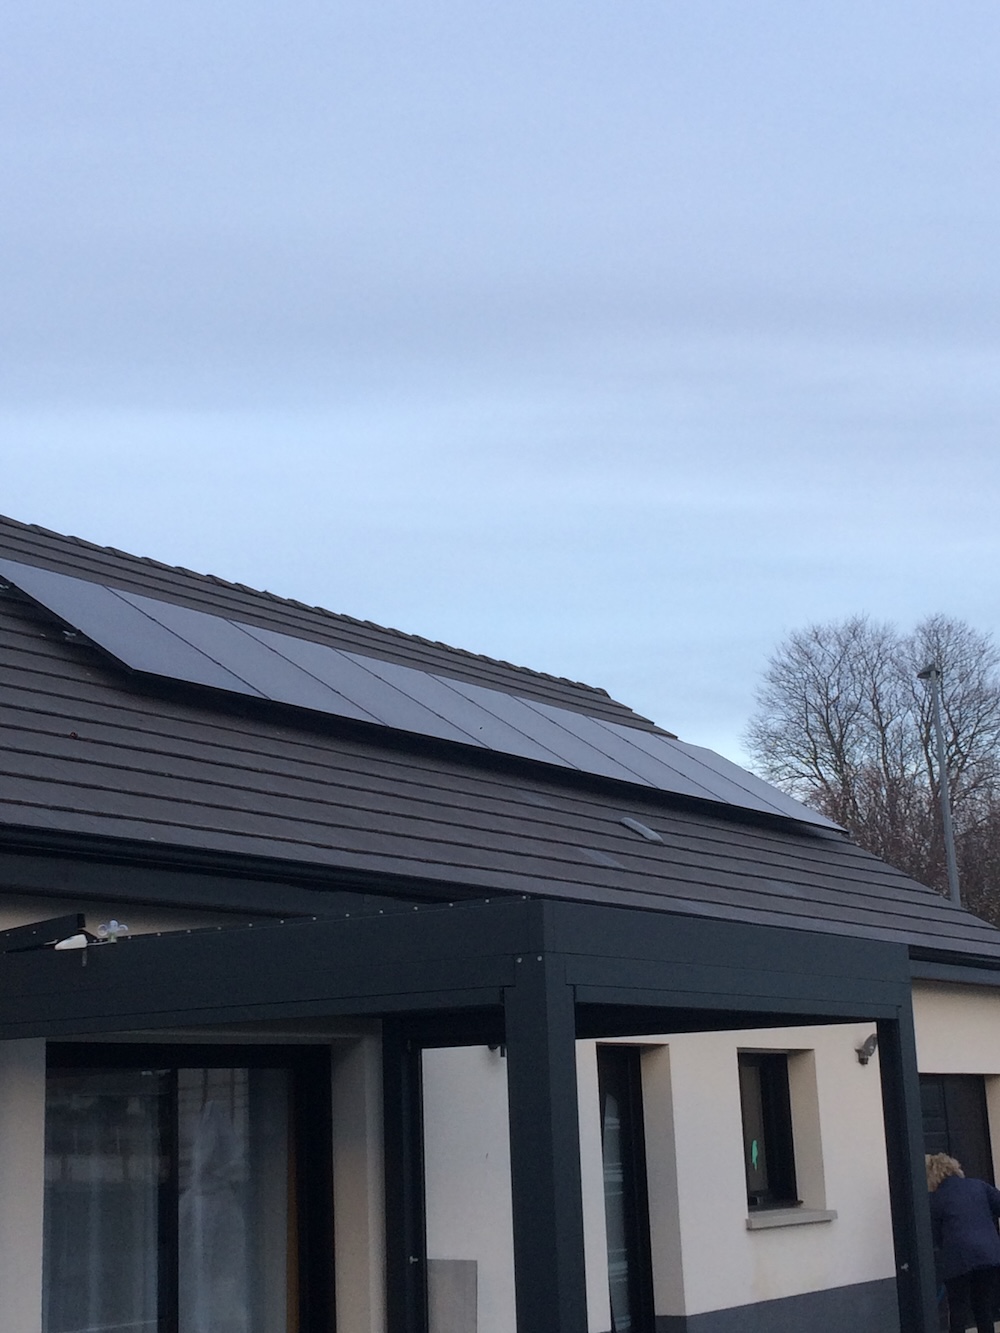 <span class="popup-mms-7">Installations de panneaux solaires sur toiture inclinée - 3280W</span>